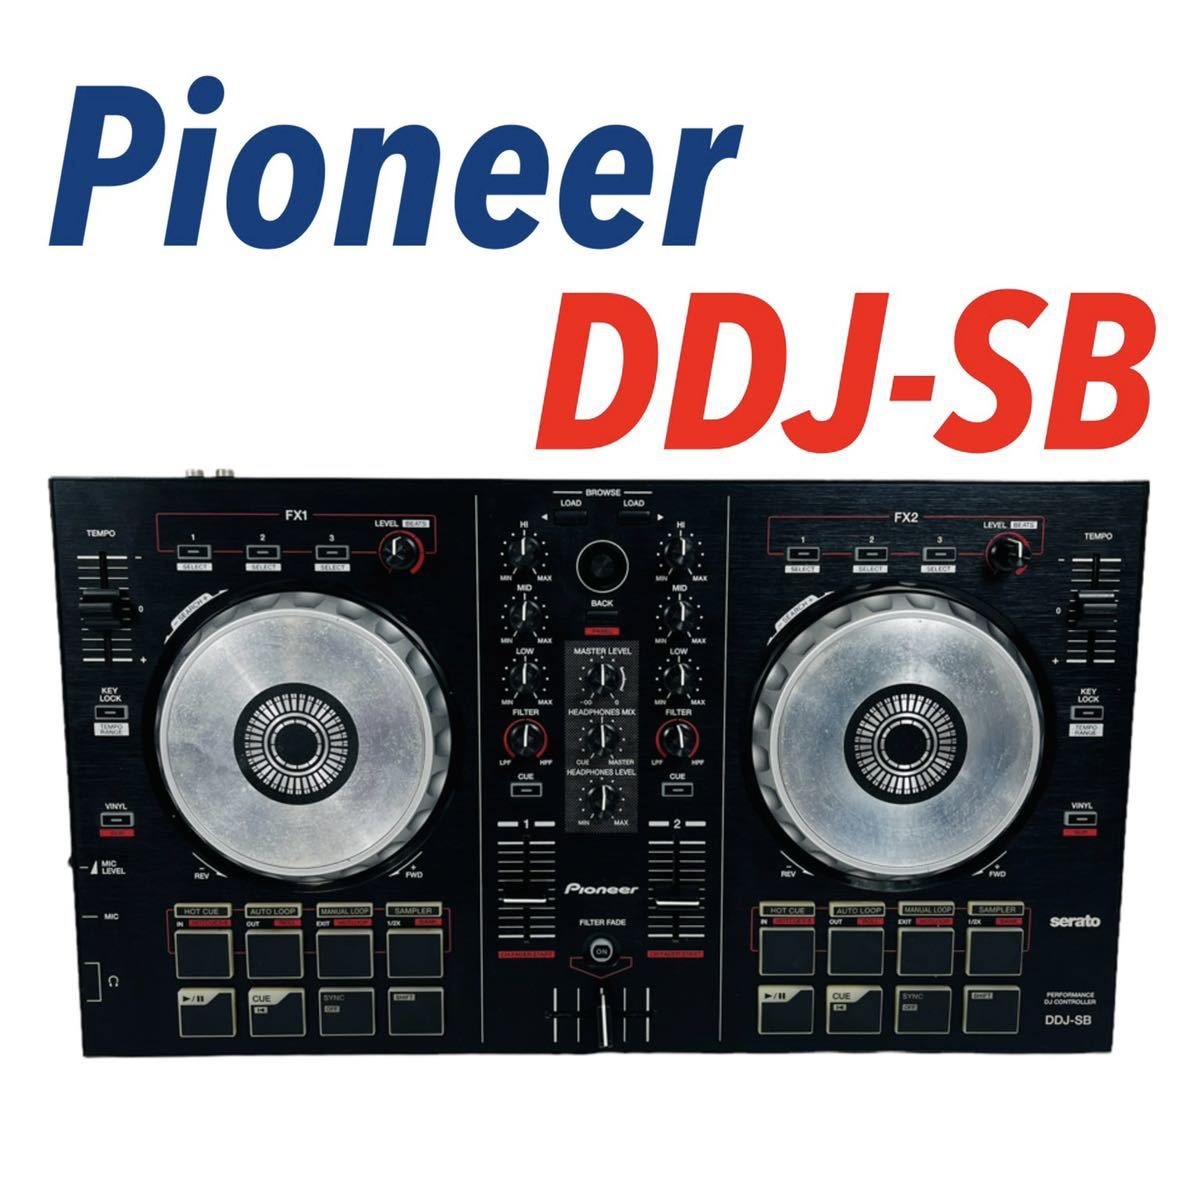 Pioneer パイオニア serato Performance DJ Controller パフォーマンスDJコントローラー DDJ-SB 